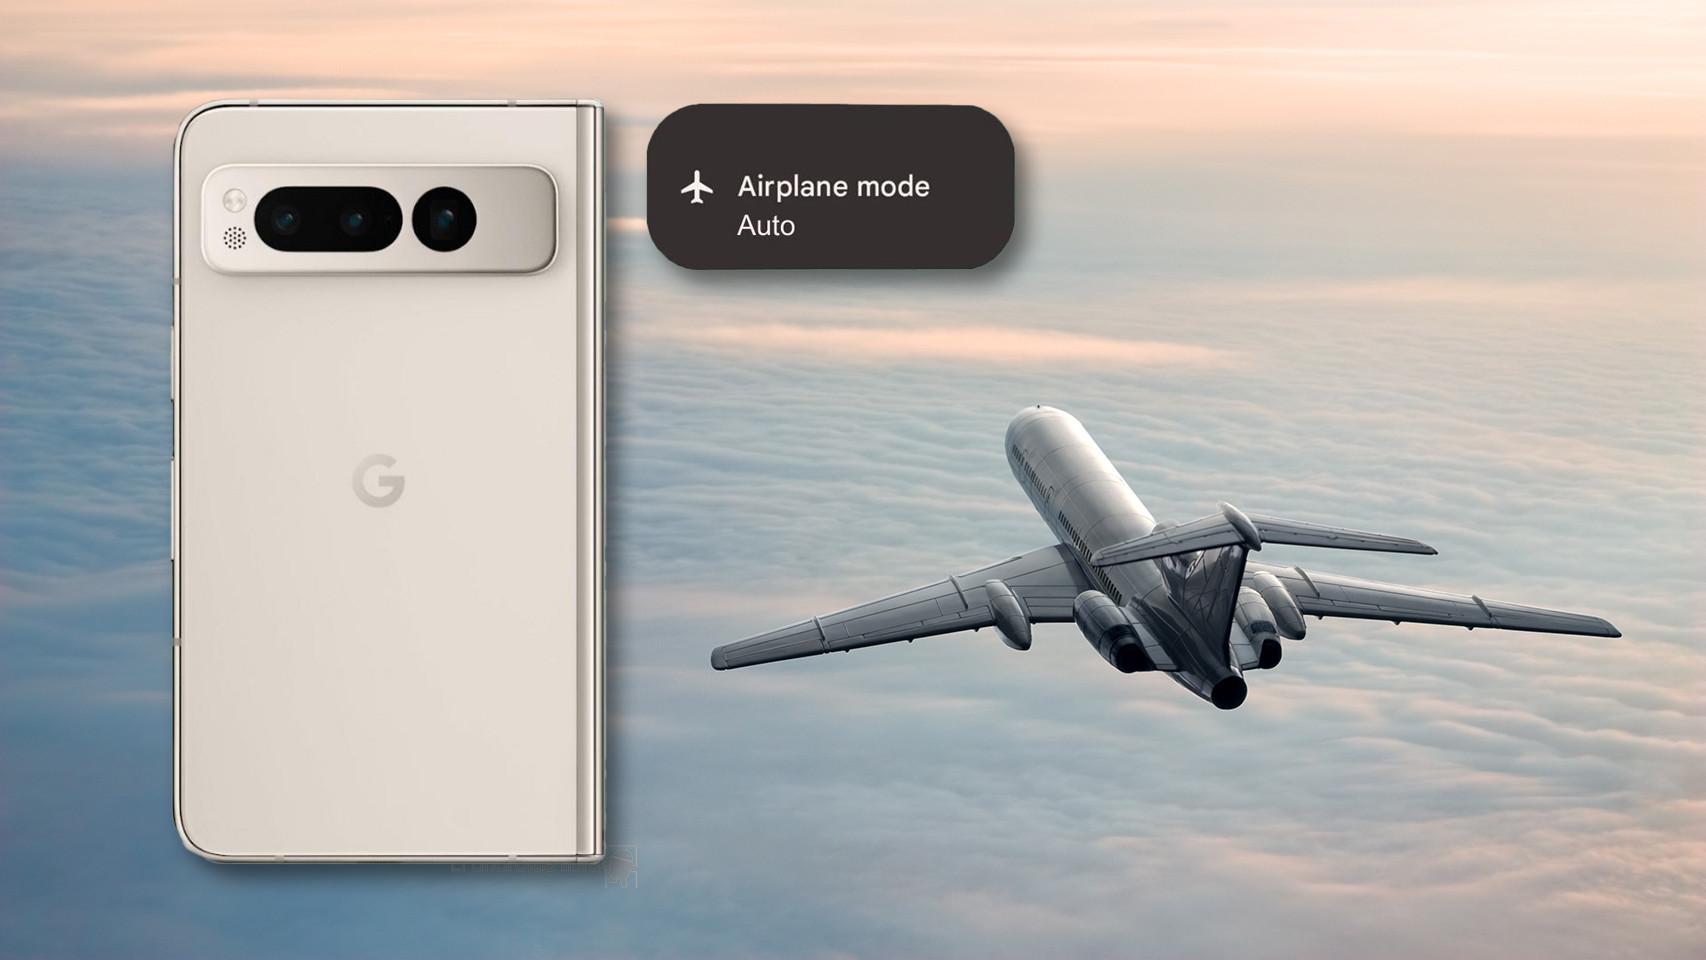 Cómo usar un celular?: Cómo activar el bluetooth y el modo avión del celular